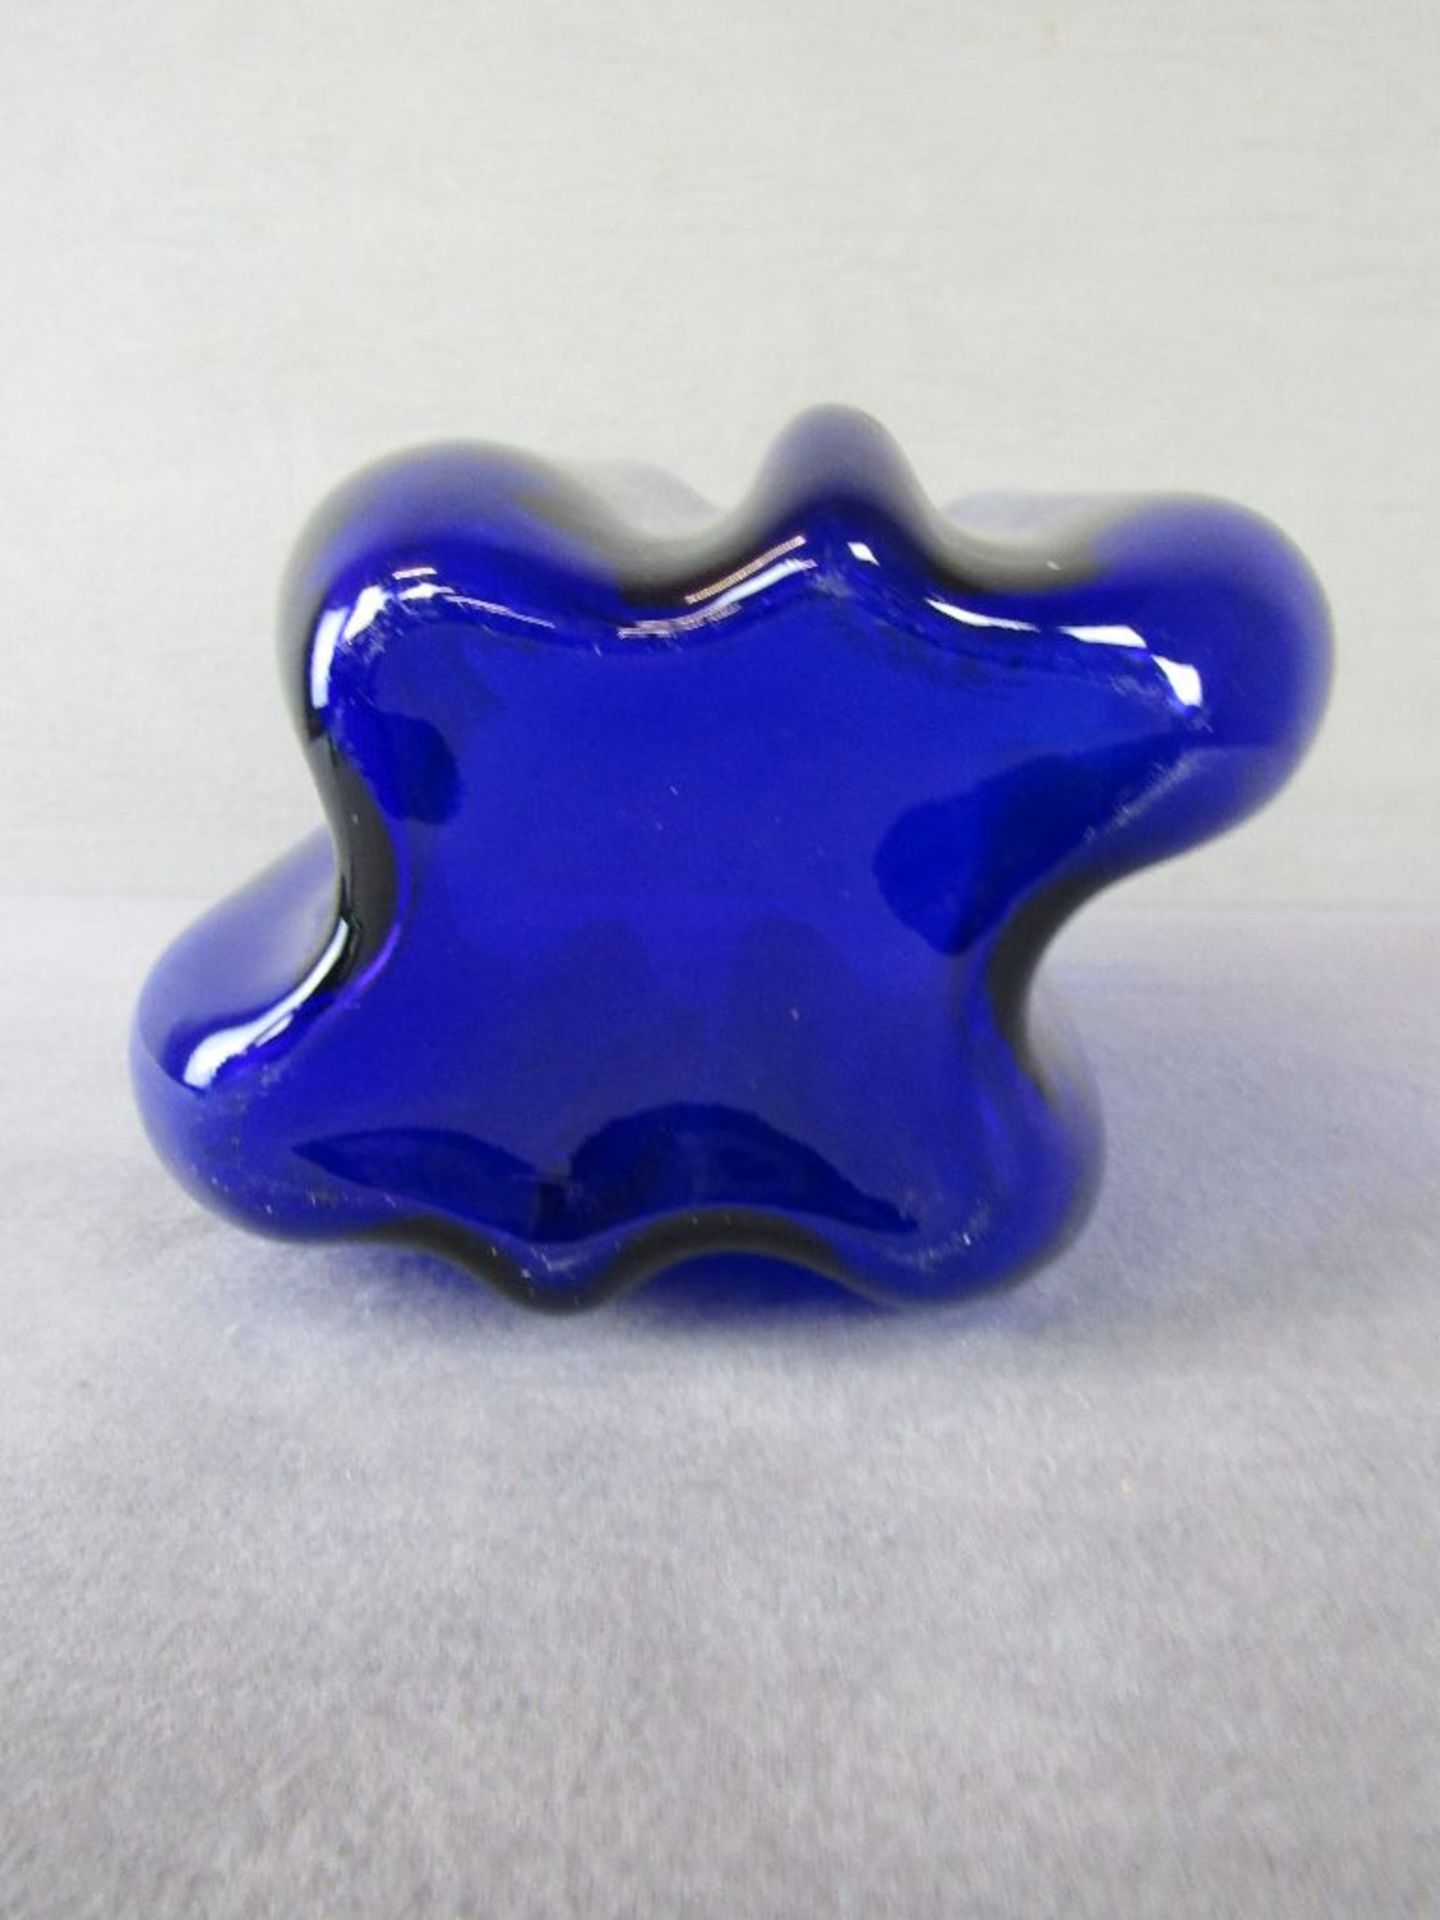 Designerglasvase Taschentuchform blau 24cm hoch - Bild 3 aus 3